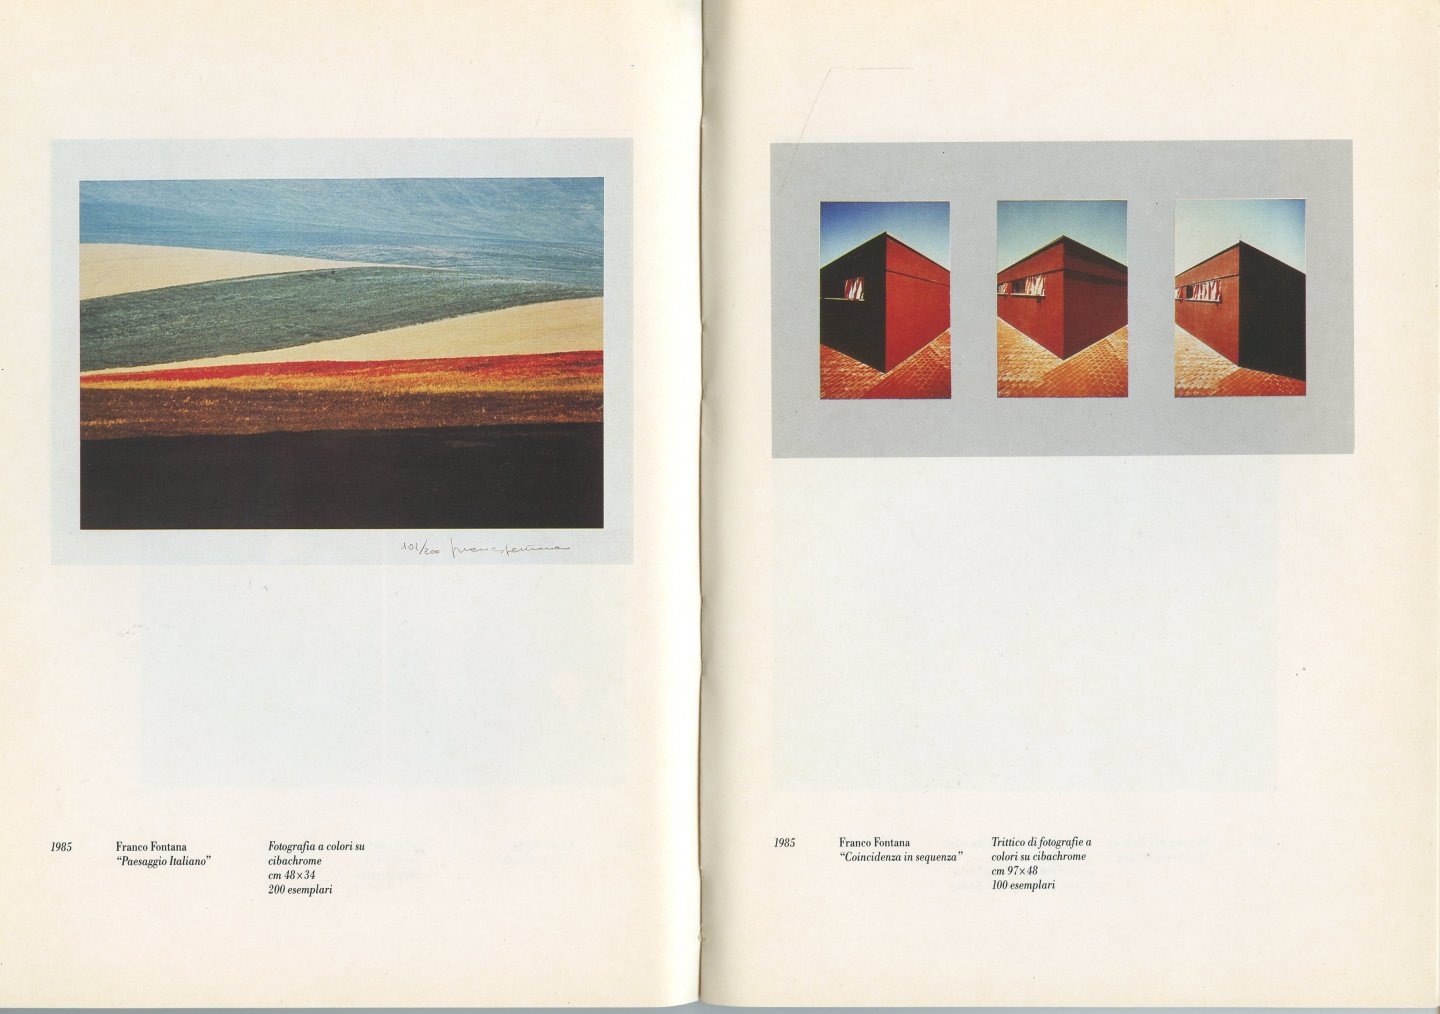 Dorfles, Gillo (Testo) - C.G.S.S. 1968/1987. L'Arte della Pubblicità